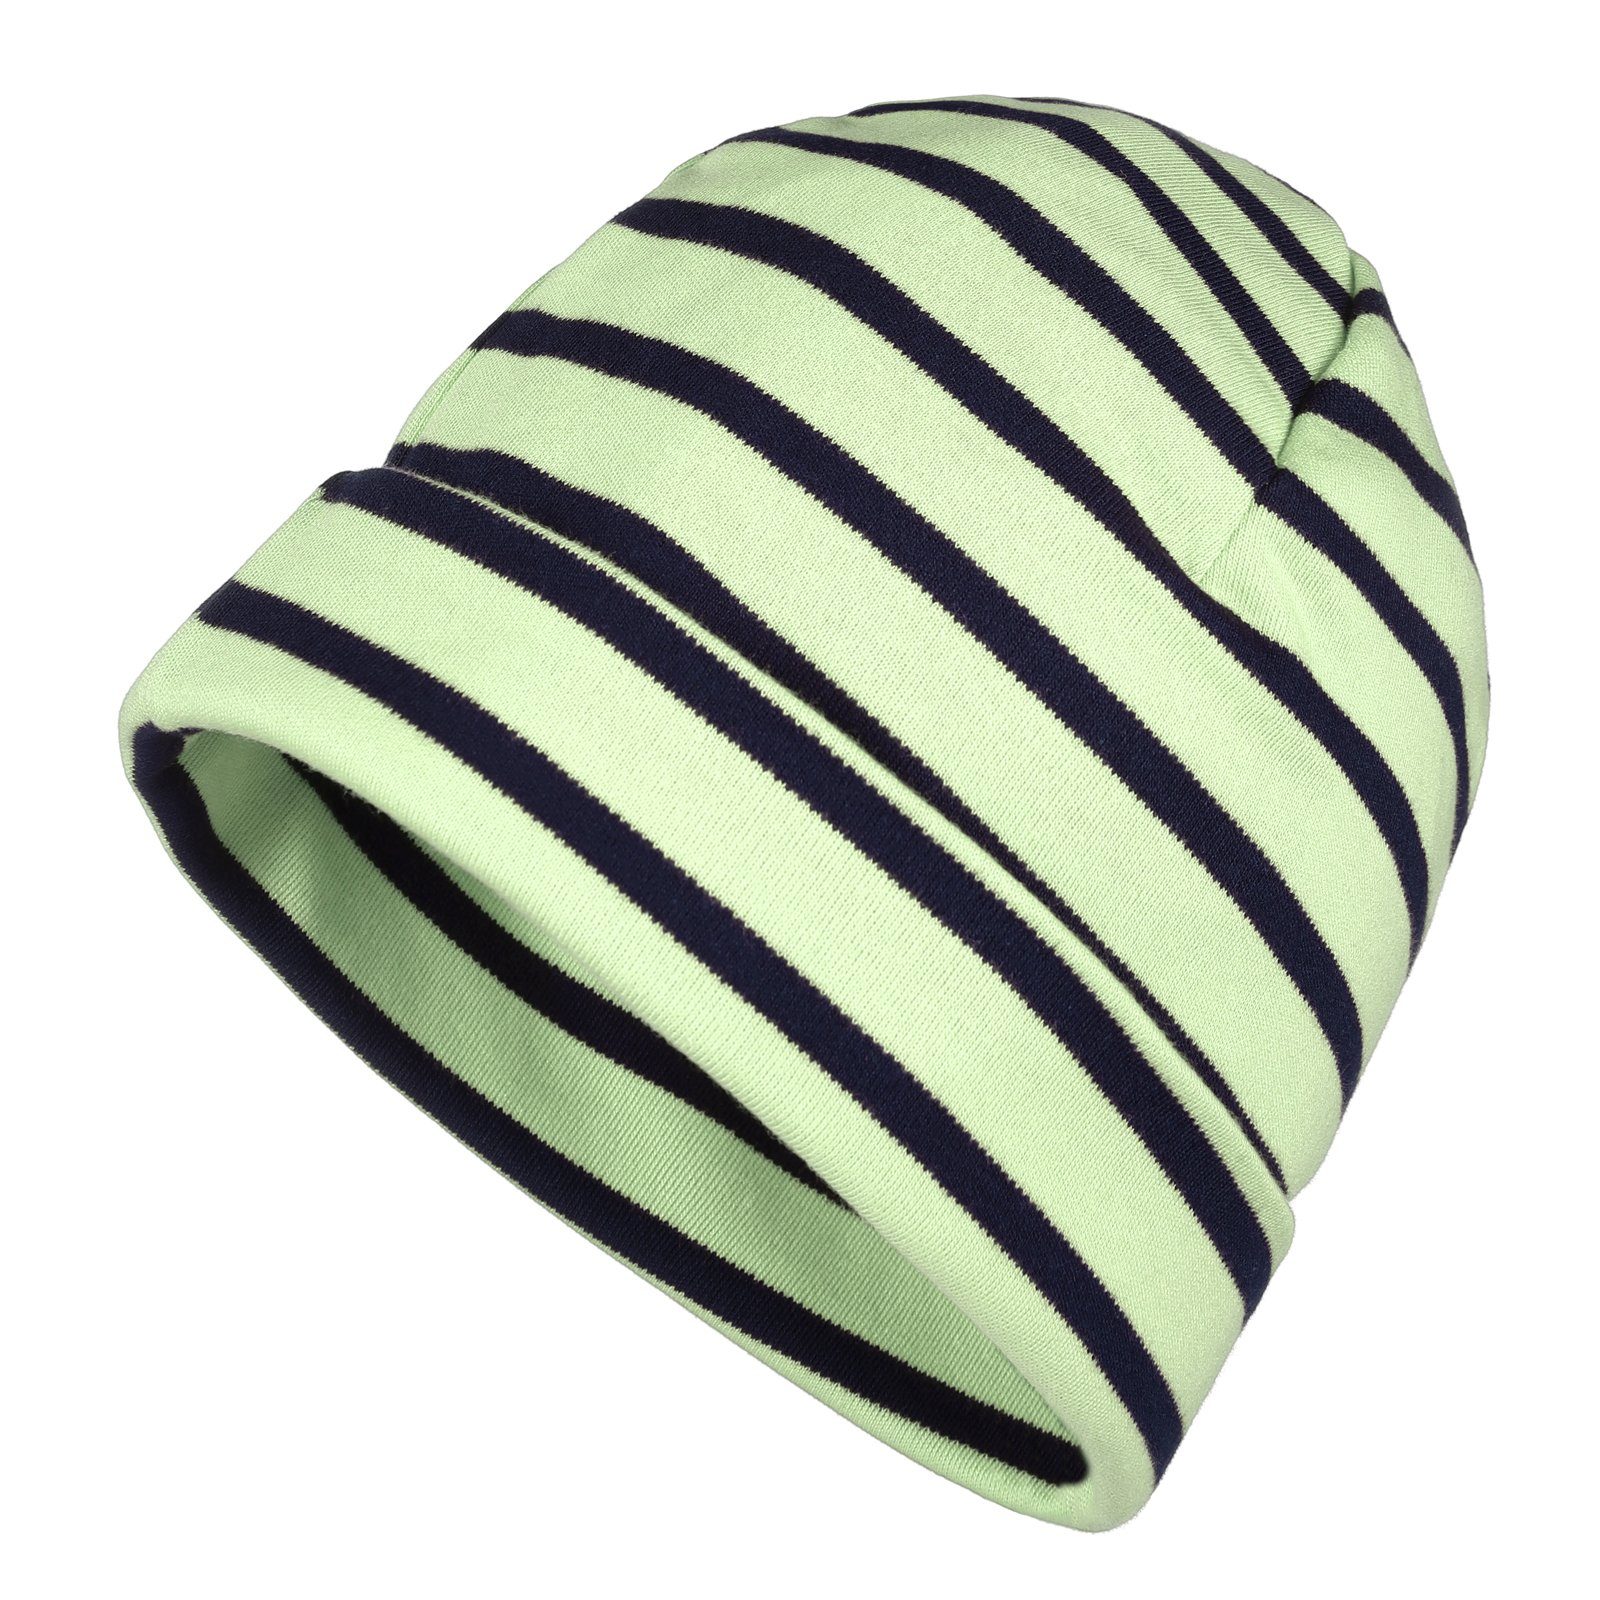 modAS Strickmütze Unisex Mütze Streifen für Kinder & Erwachsene - Ringelmütze Baumwolle